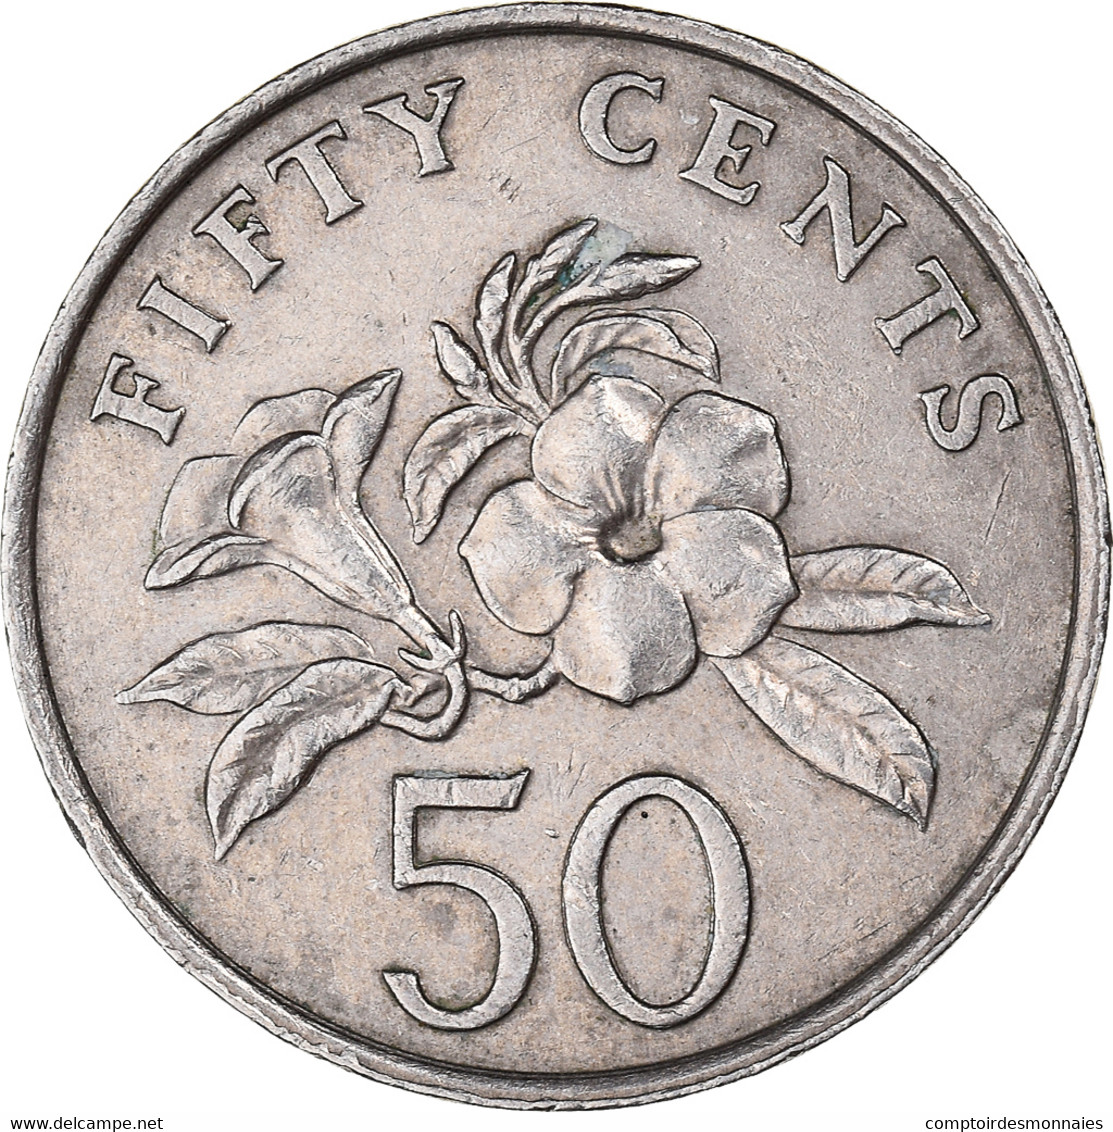 Monnaie, Singapour, 50 Cents, 1986 - Singapour